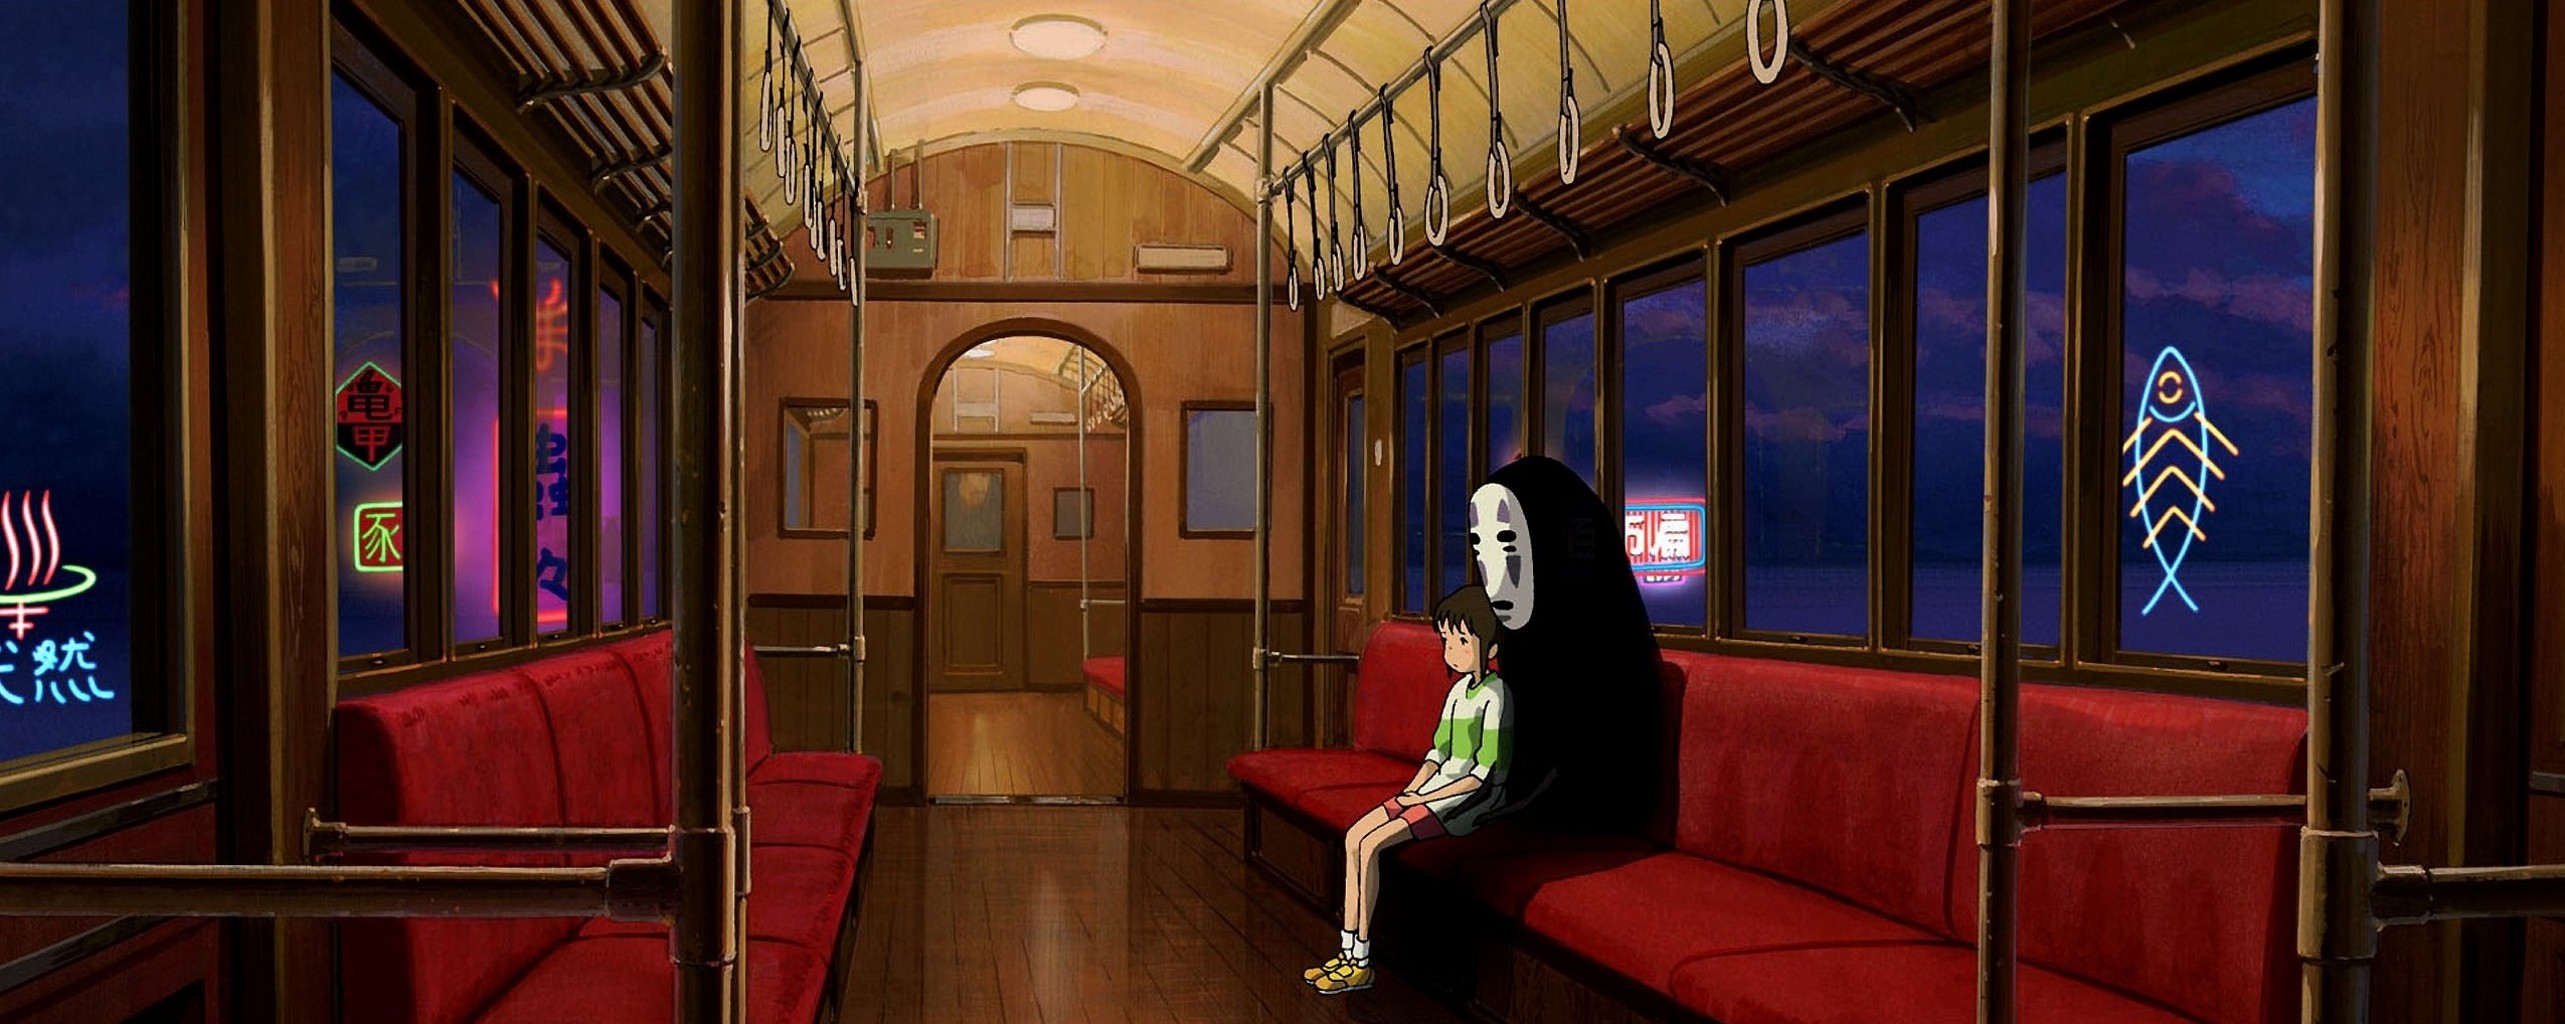 Studio Ghibli Spirited Away Chihiro Hayao Miyazaki Anime 2565x1024